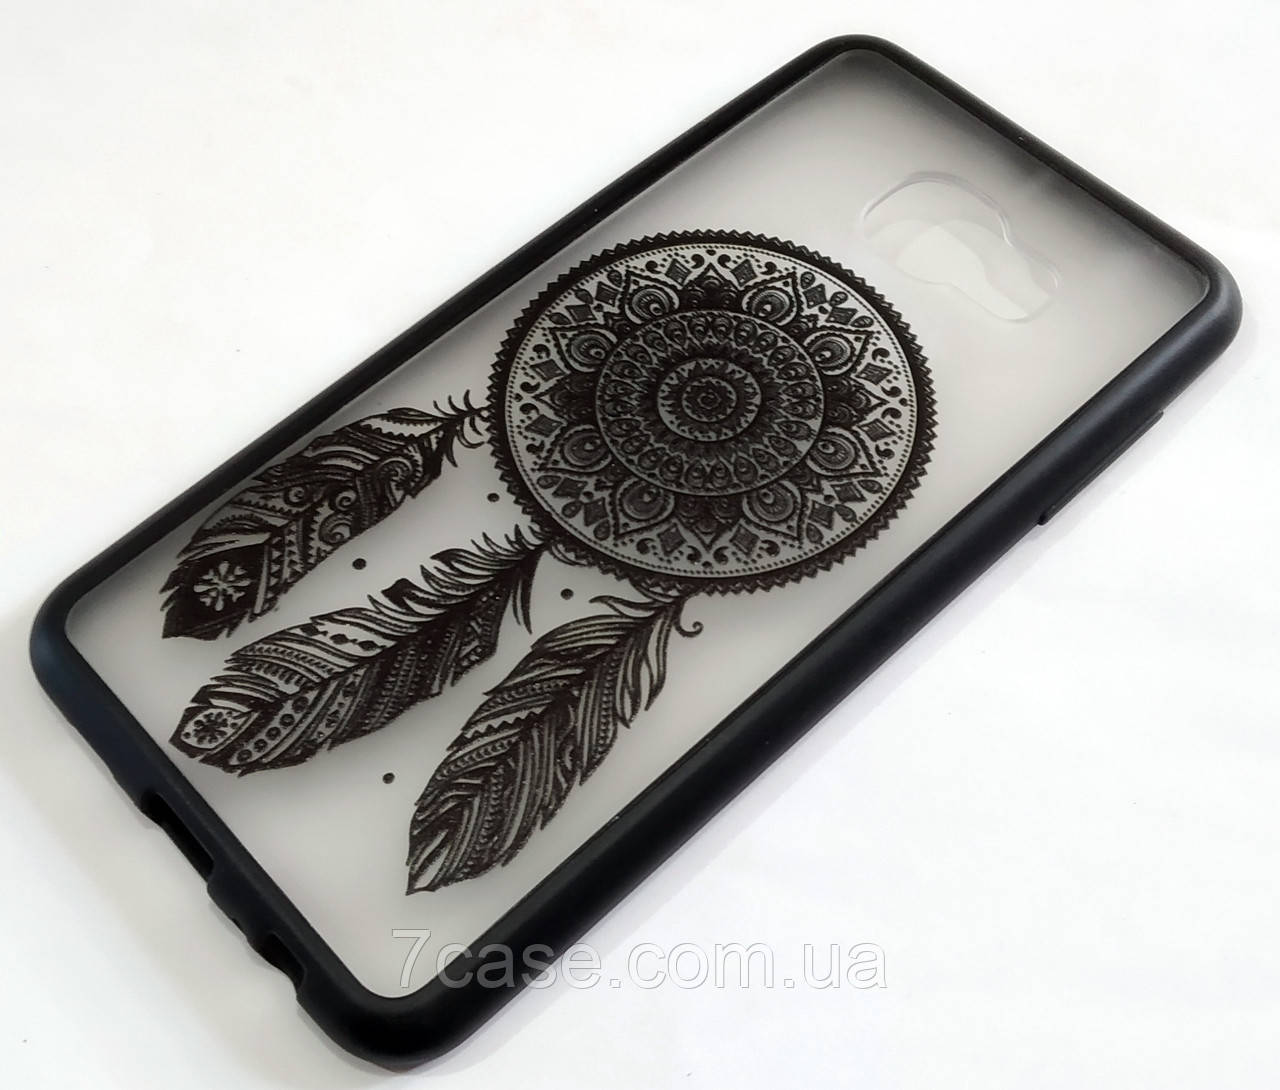 

Чехол Yotoo пластиковый для Samsung Galaxy C5 c5000 / C5 Pro с рисунком ловец снов, Черный